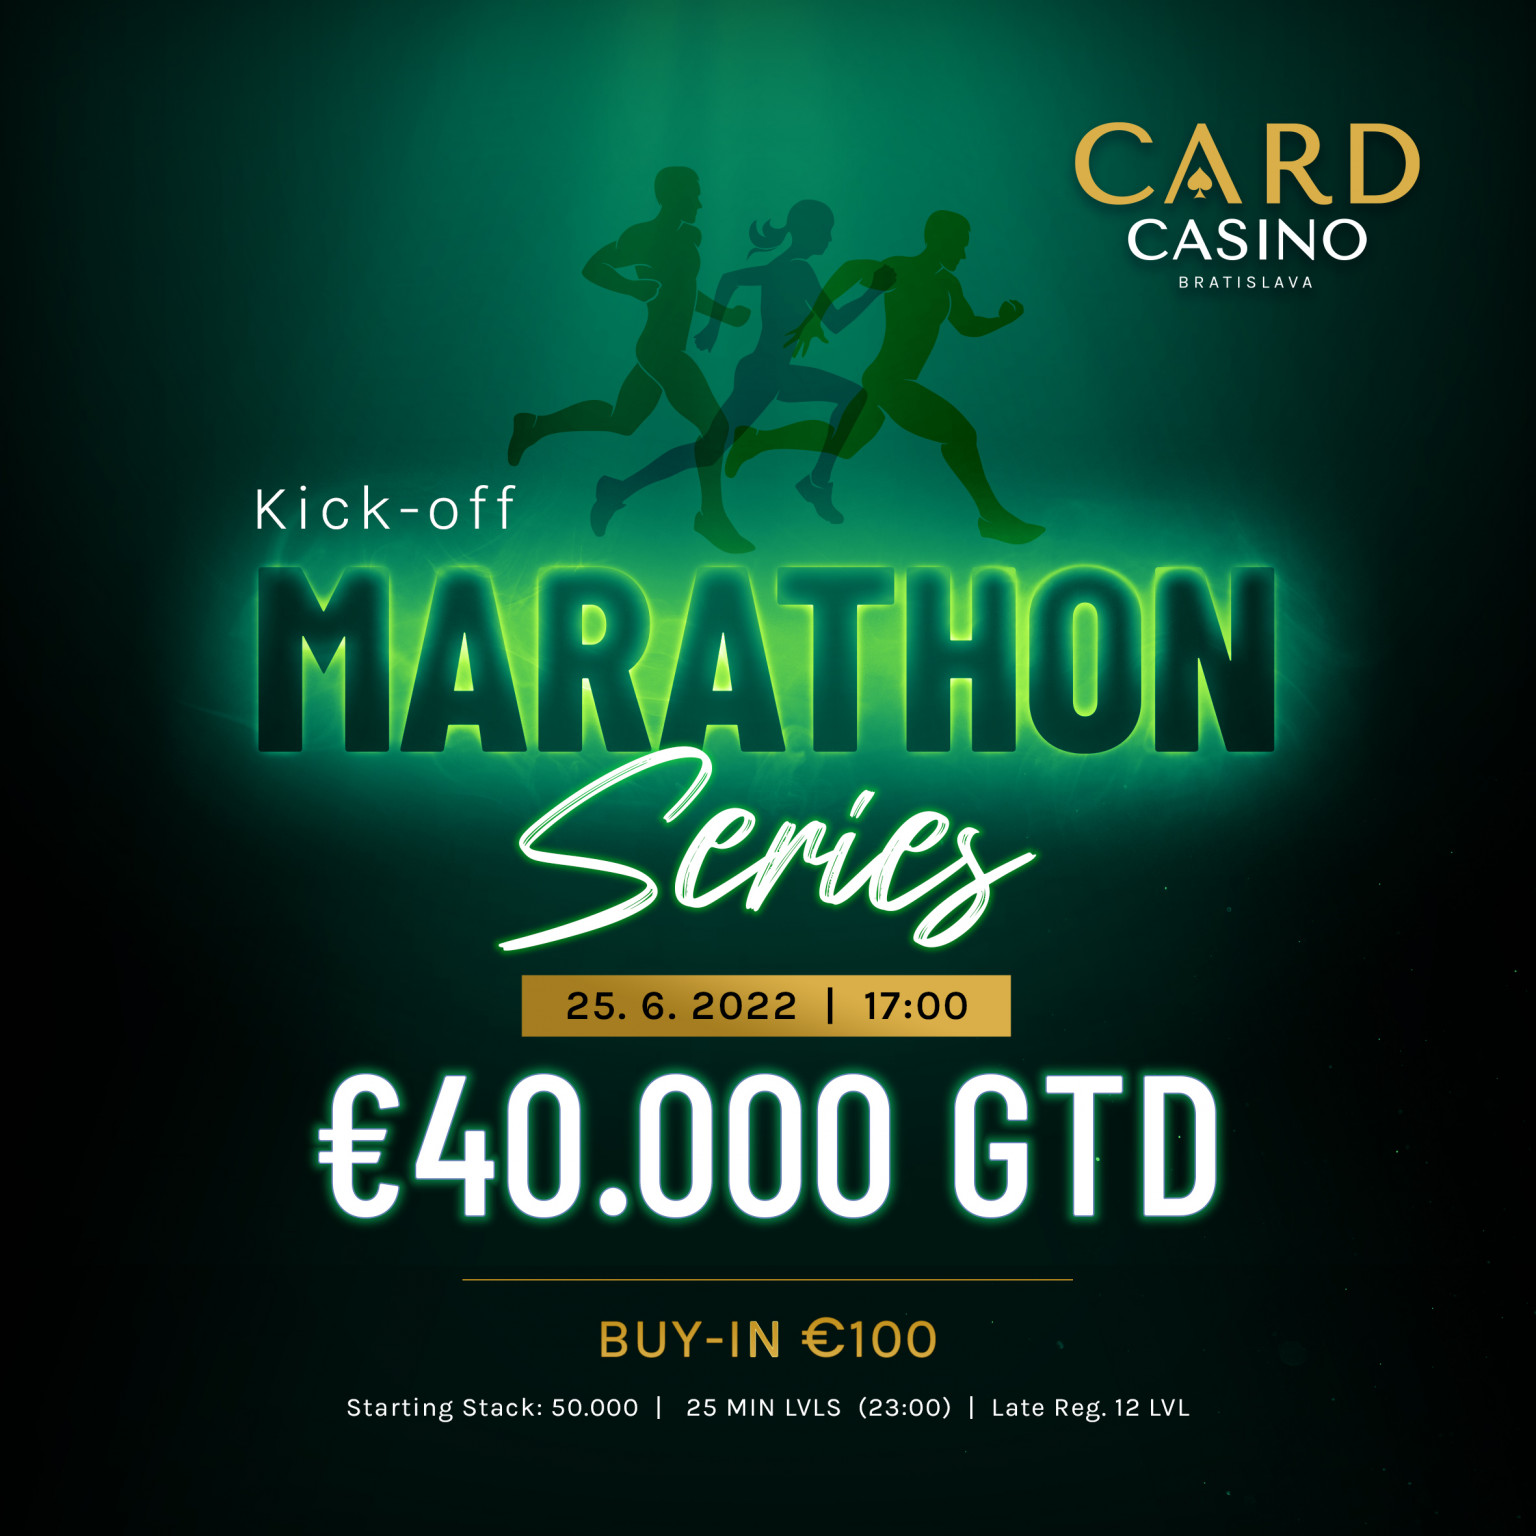 Jednodňový maratón počas léta. V sobotu čaká na hráčov štart SUMMER MARATHON SERIES - Kick-off s 40.000€ GTD!